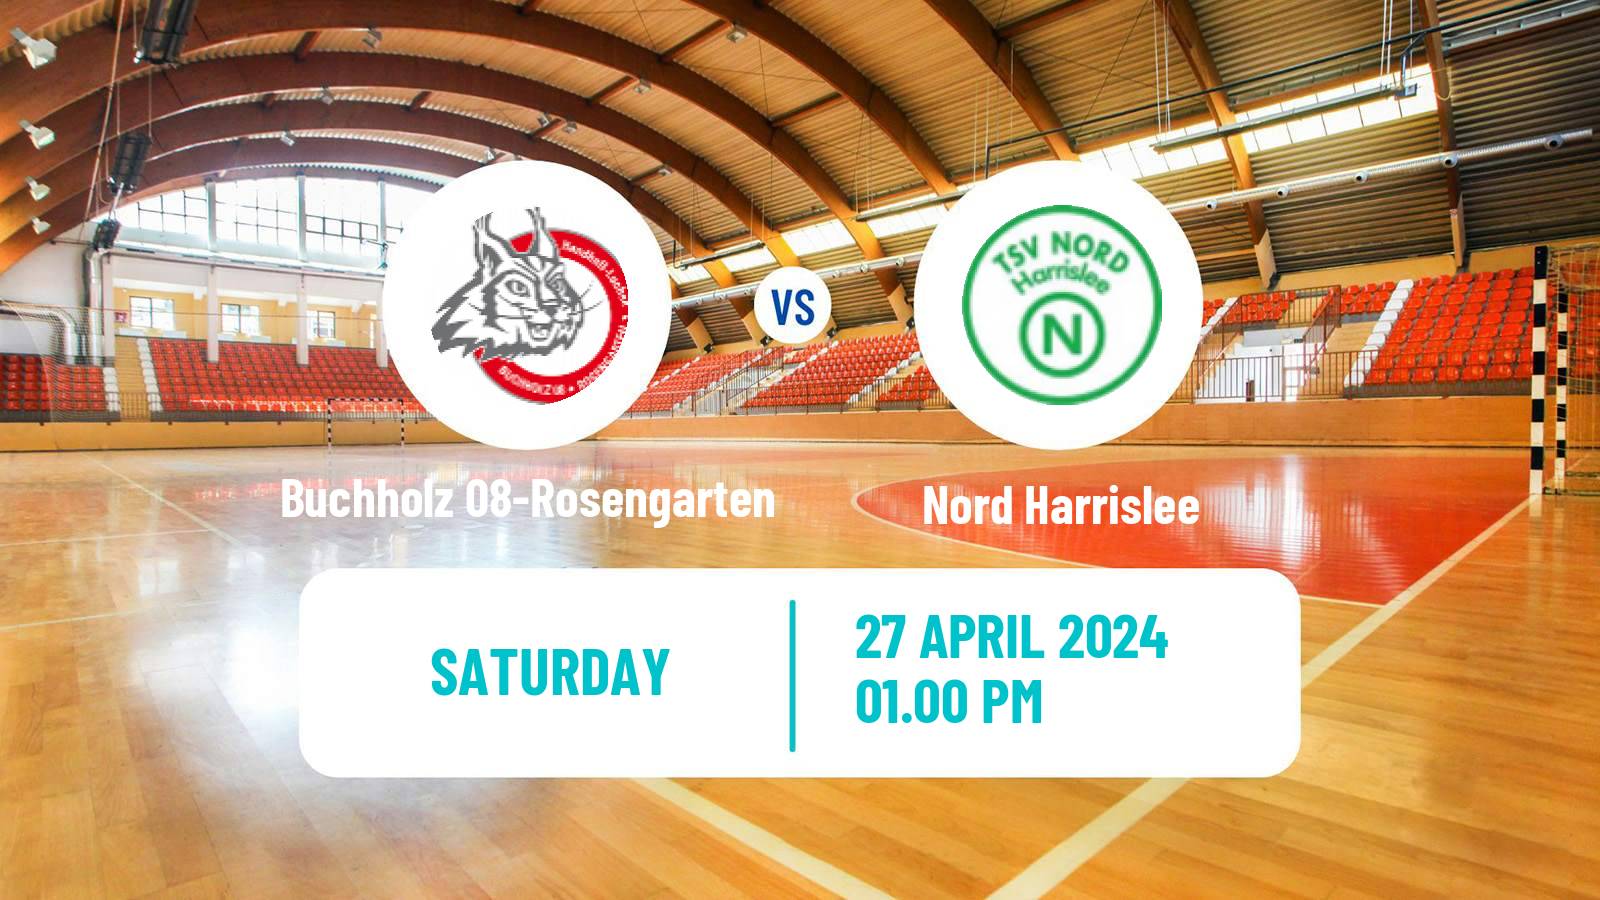 Handball German 2 Bundesliga Handball Women Buchholz 08-Rosengarten - Nord Harrislee